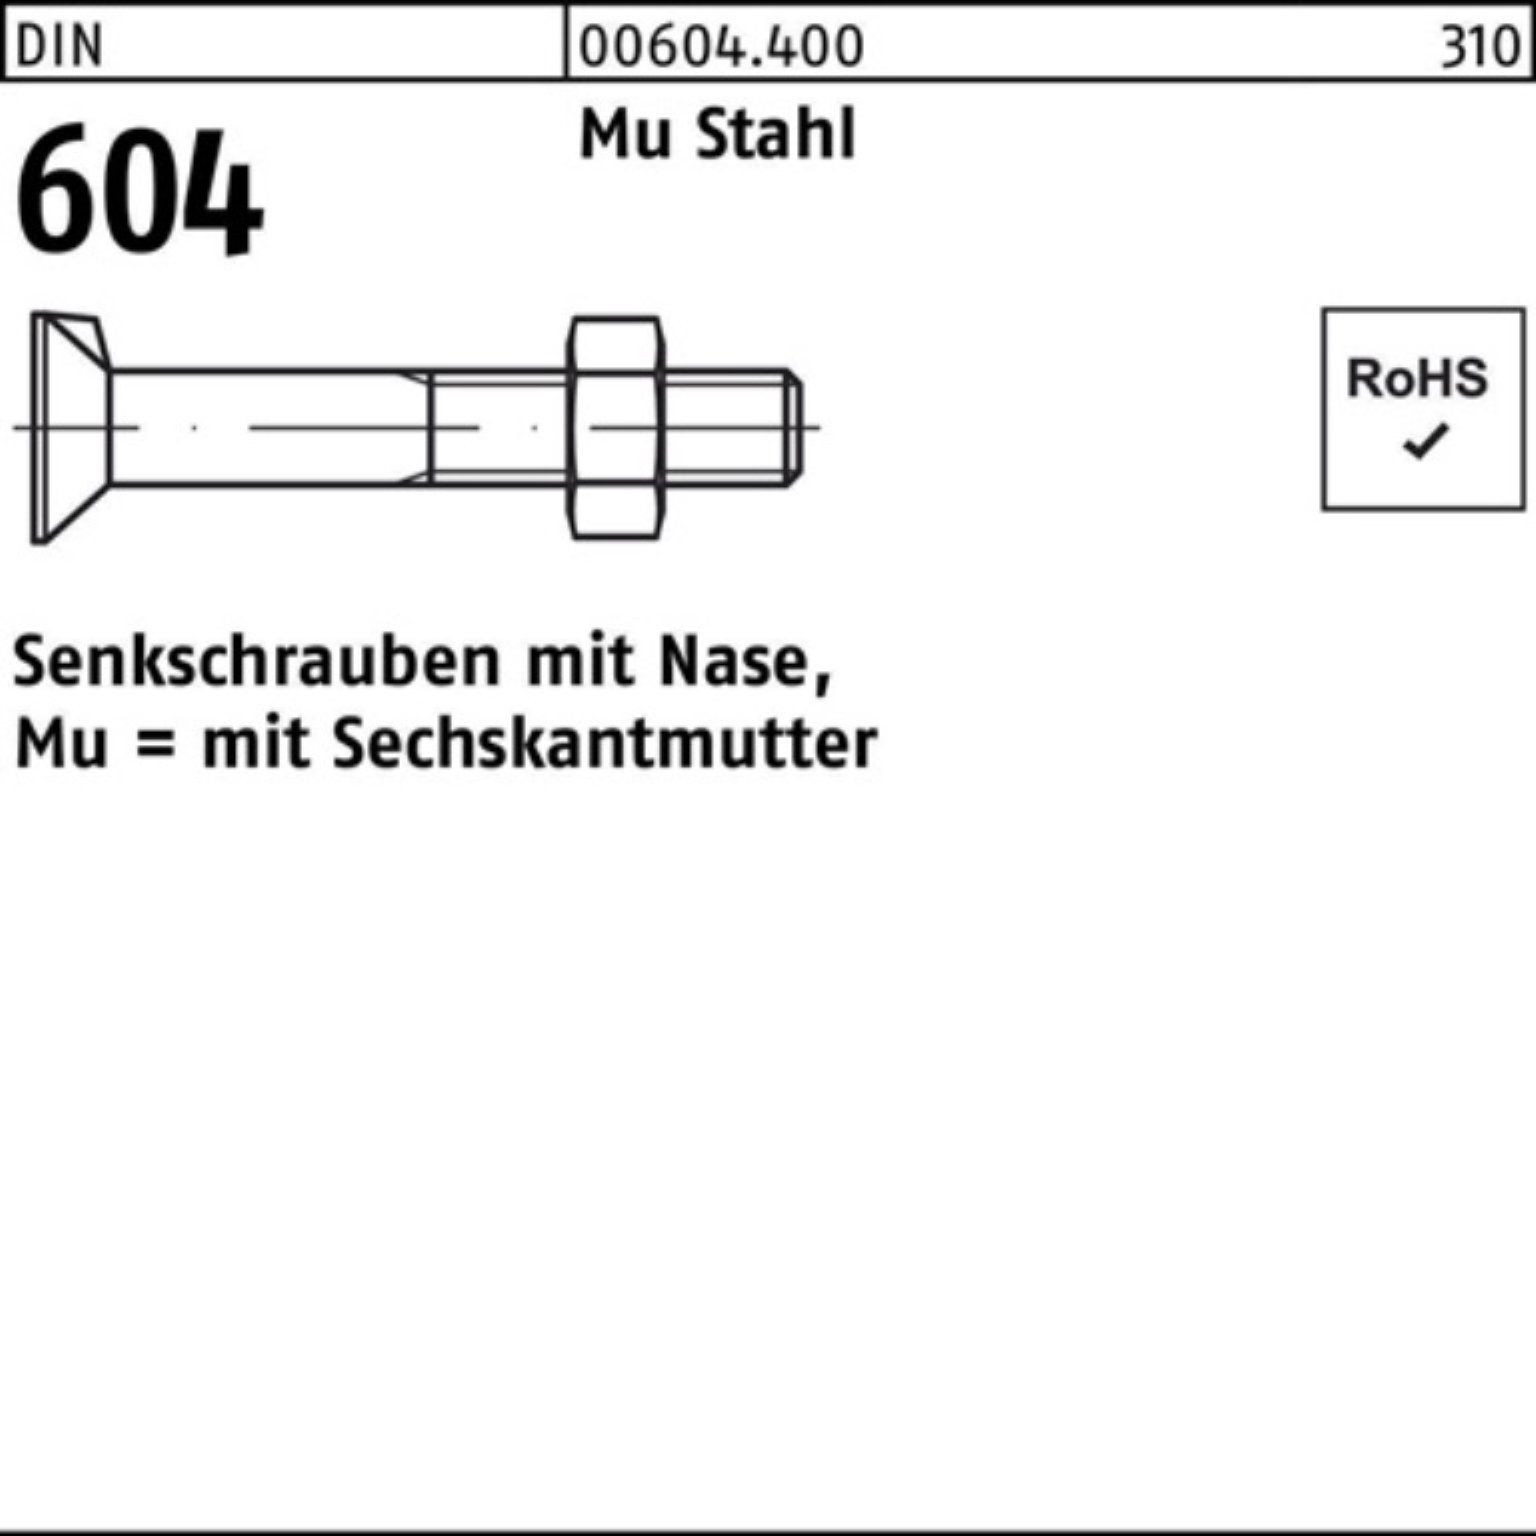 Reyher Senkschraube 200er Pack Senkschraube DIN 604 Nase/6-ktmutter M6x 60 Mu Stahl 4.6 20 | Schrauben